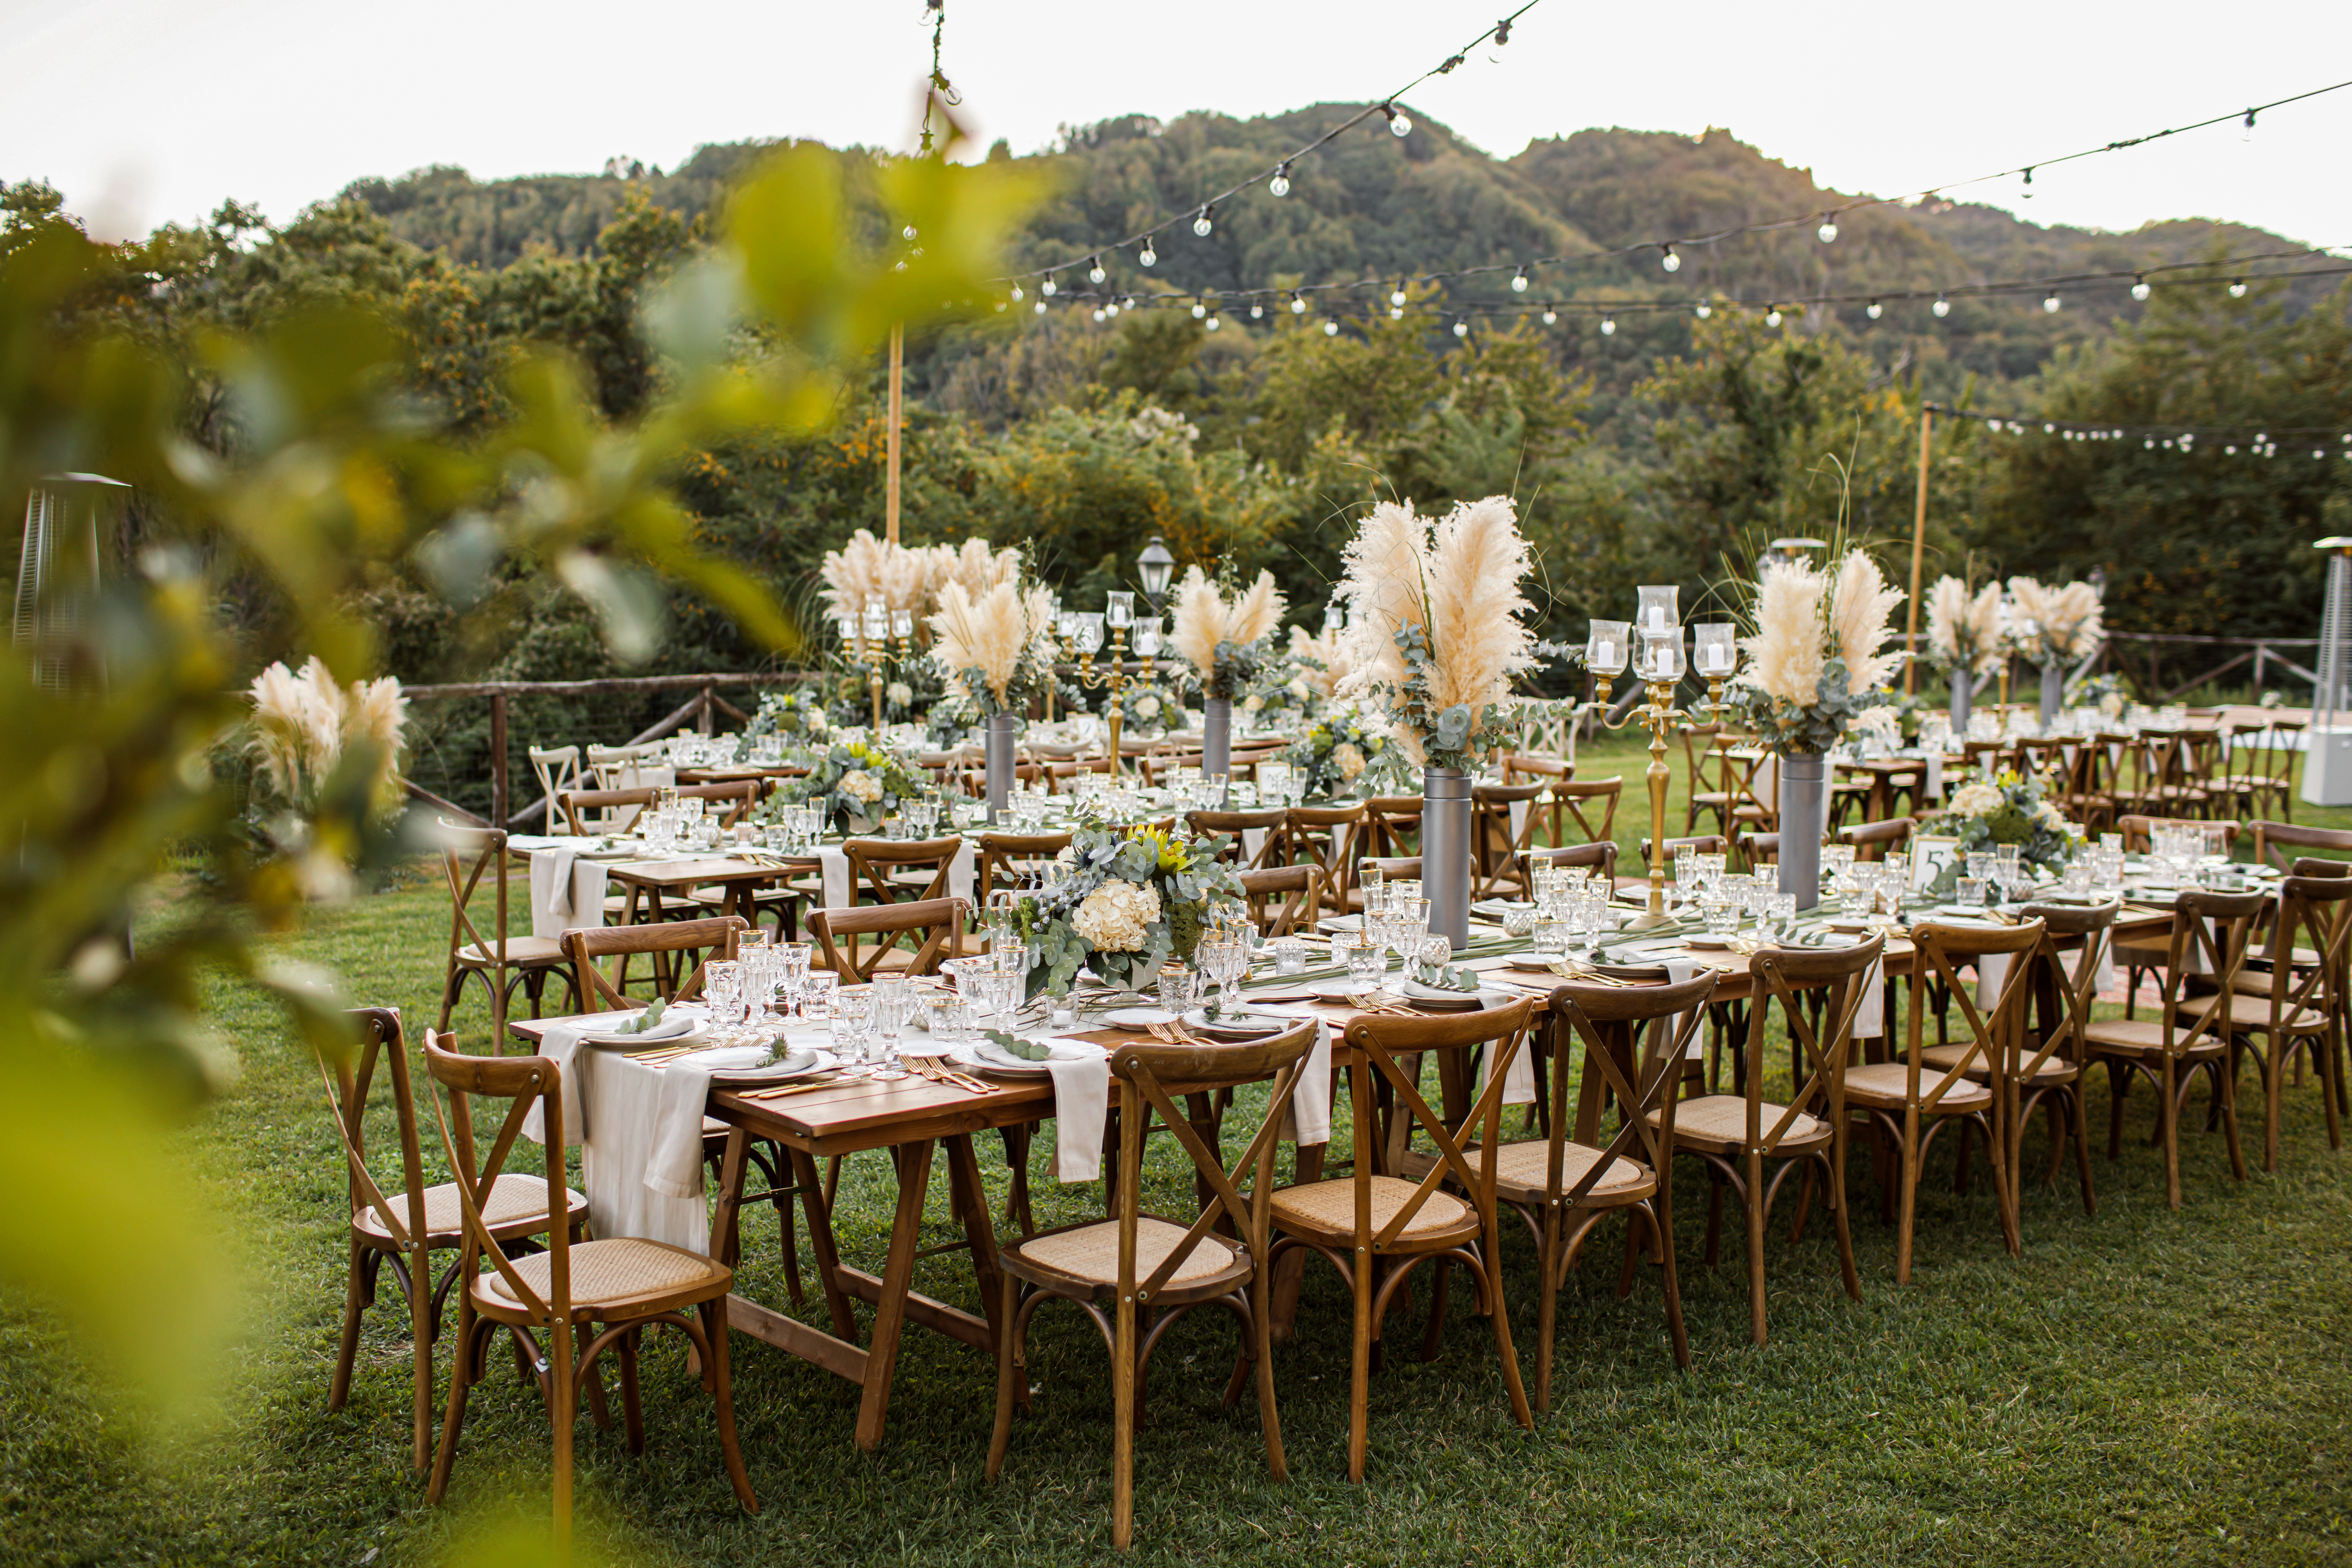 Une table dressée pour les invités lors d'un événement en plein air | Source : Shutterstock